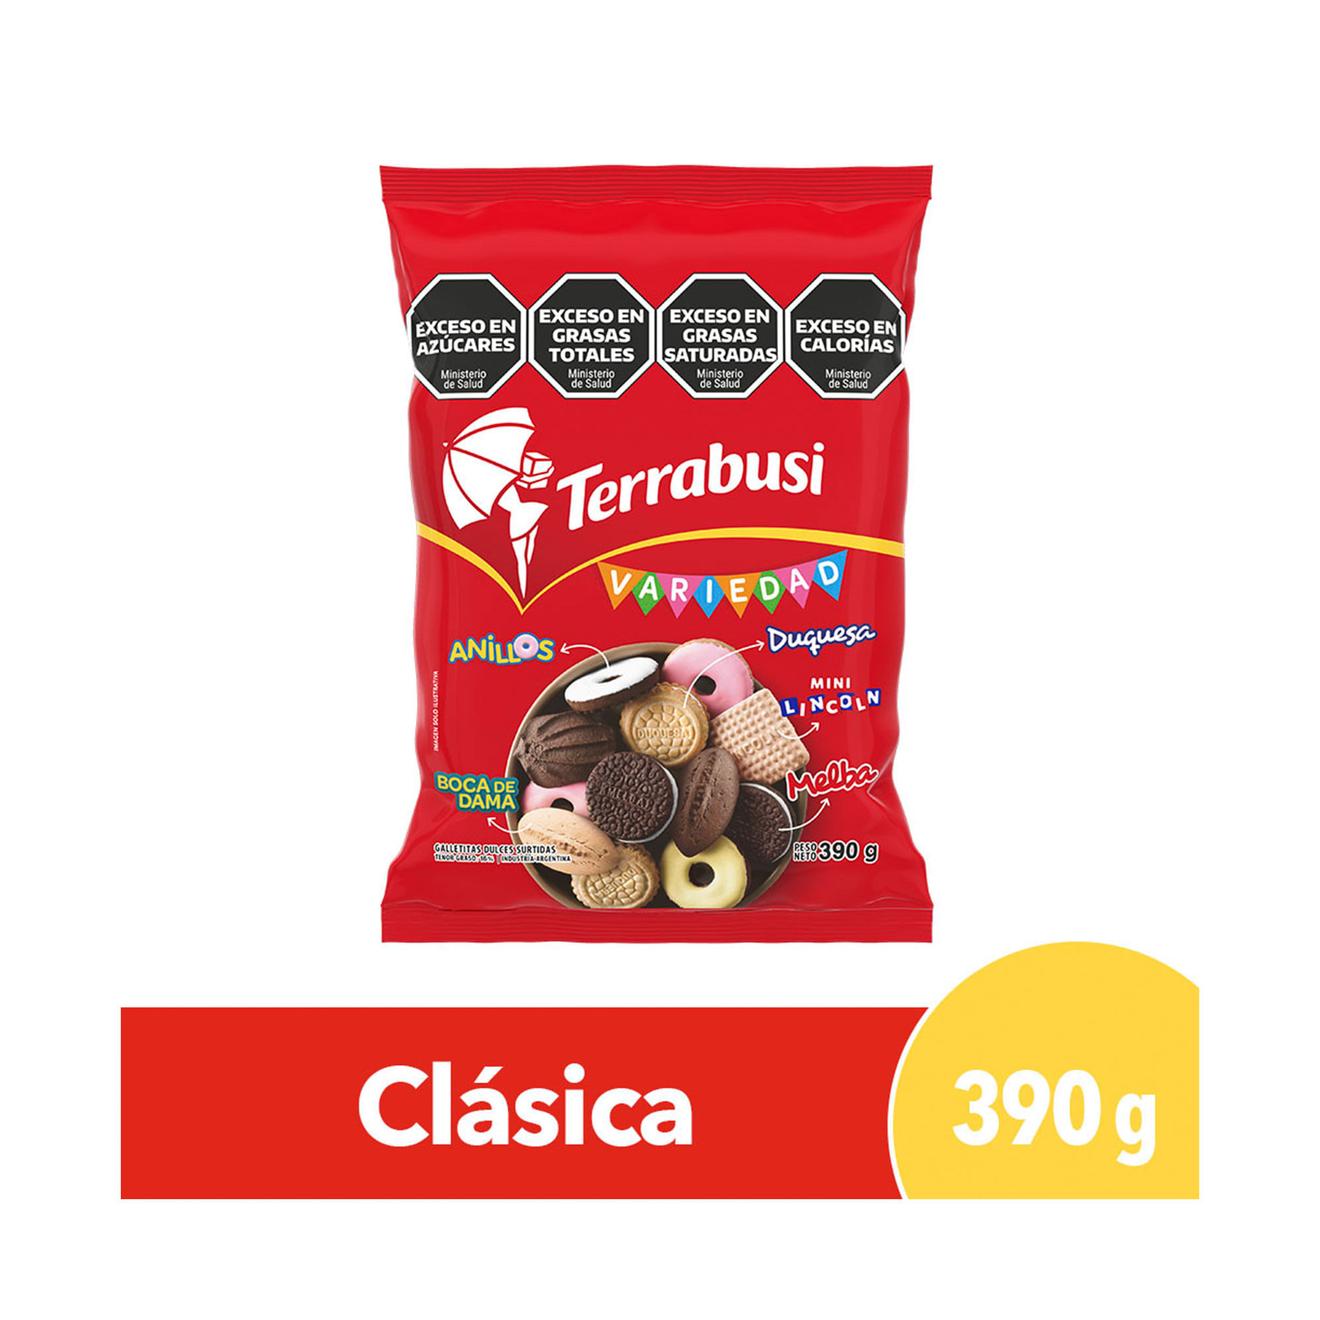 Oferta de Galletitas dulces Variedad de Terrabusi nuevo mix 390 g. por $1849 en Carrefour